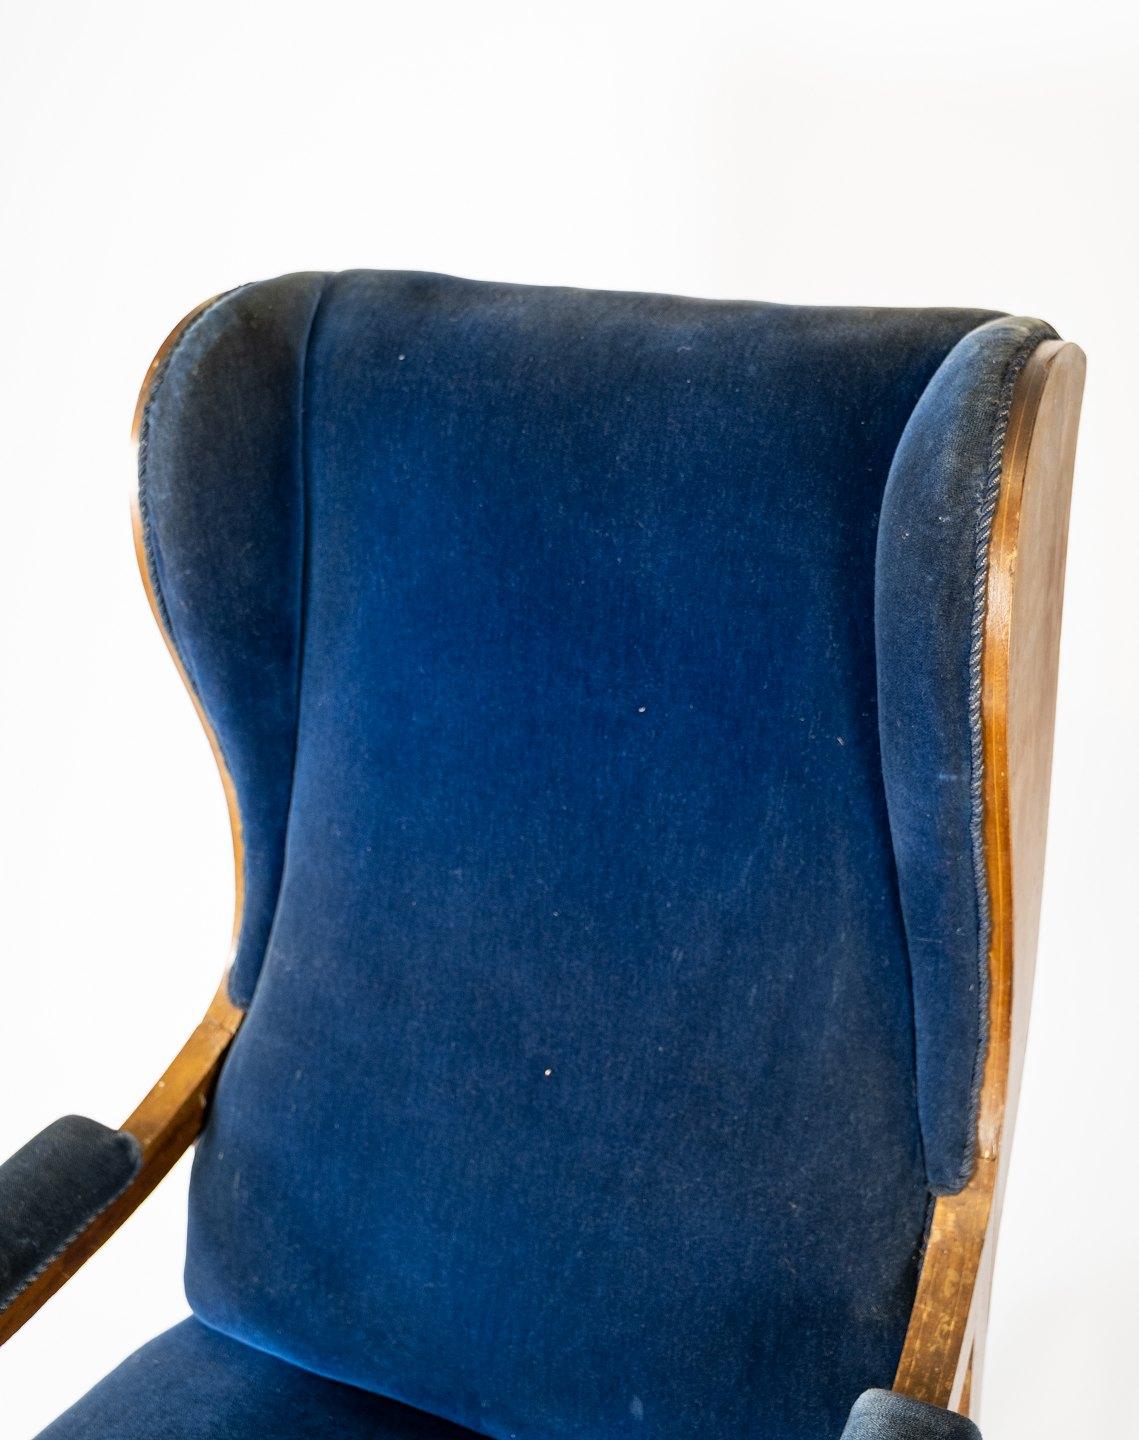 Scandinavian Modern Armchair Made In Blue Velvet & Mahogany Designed By Fritz Henningsen From 1940s For Sale